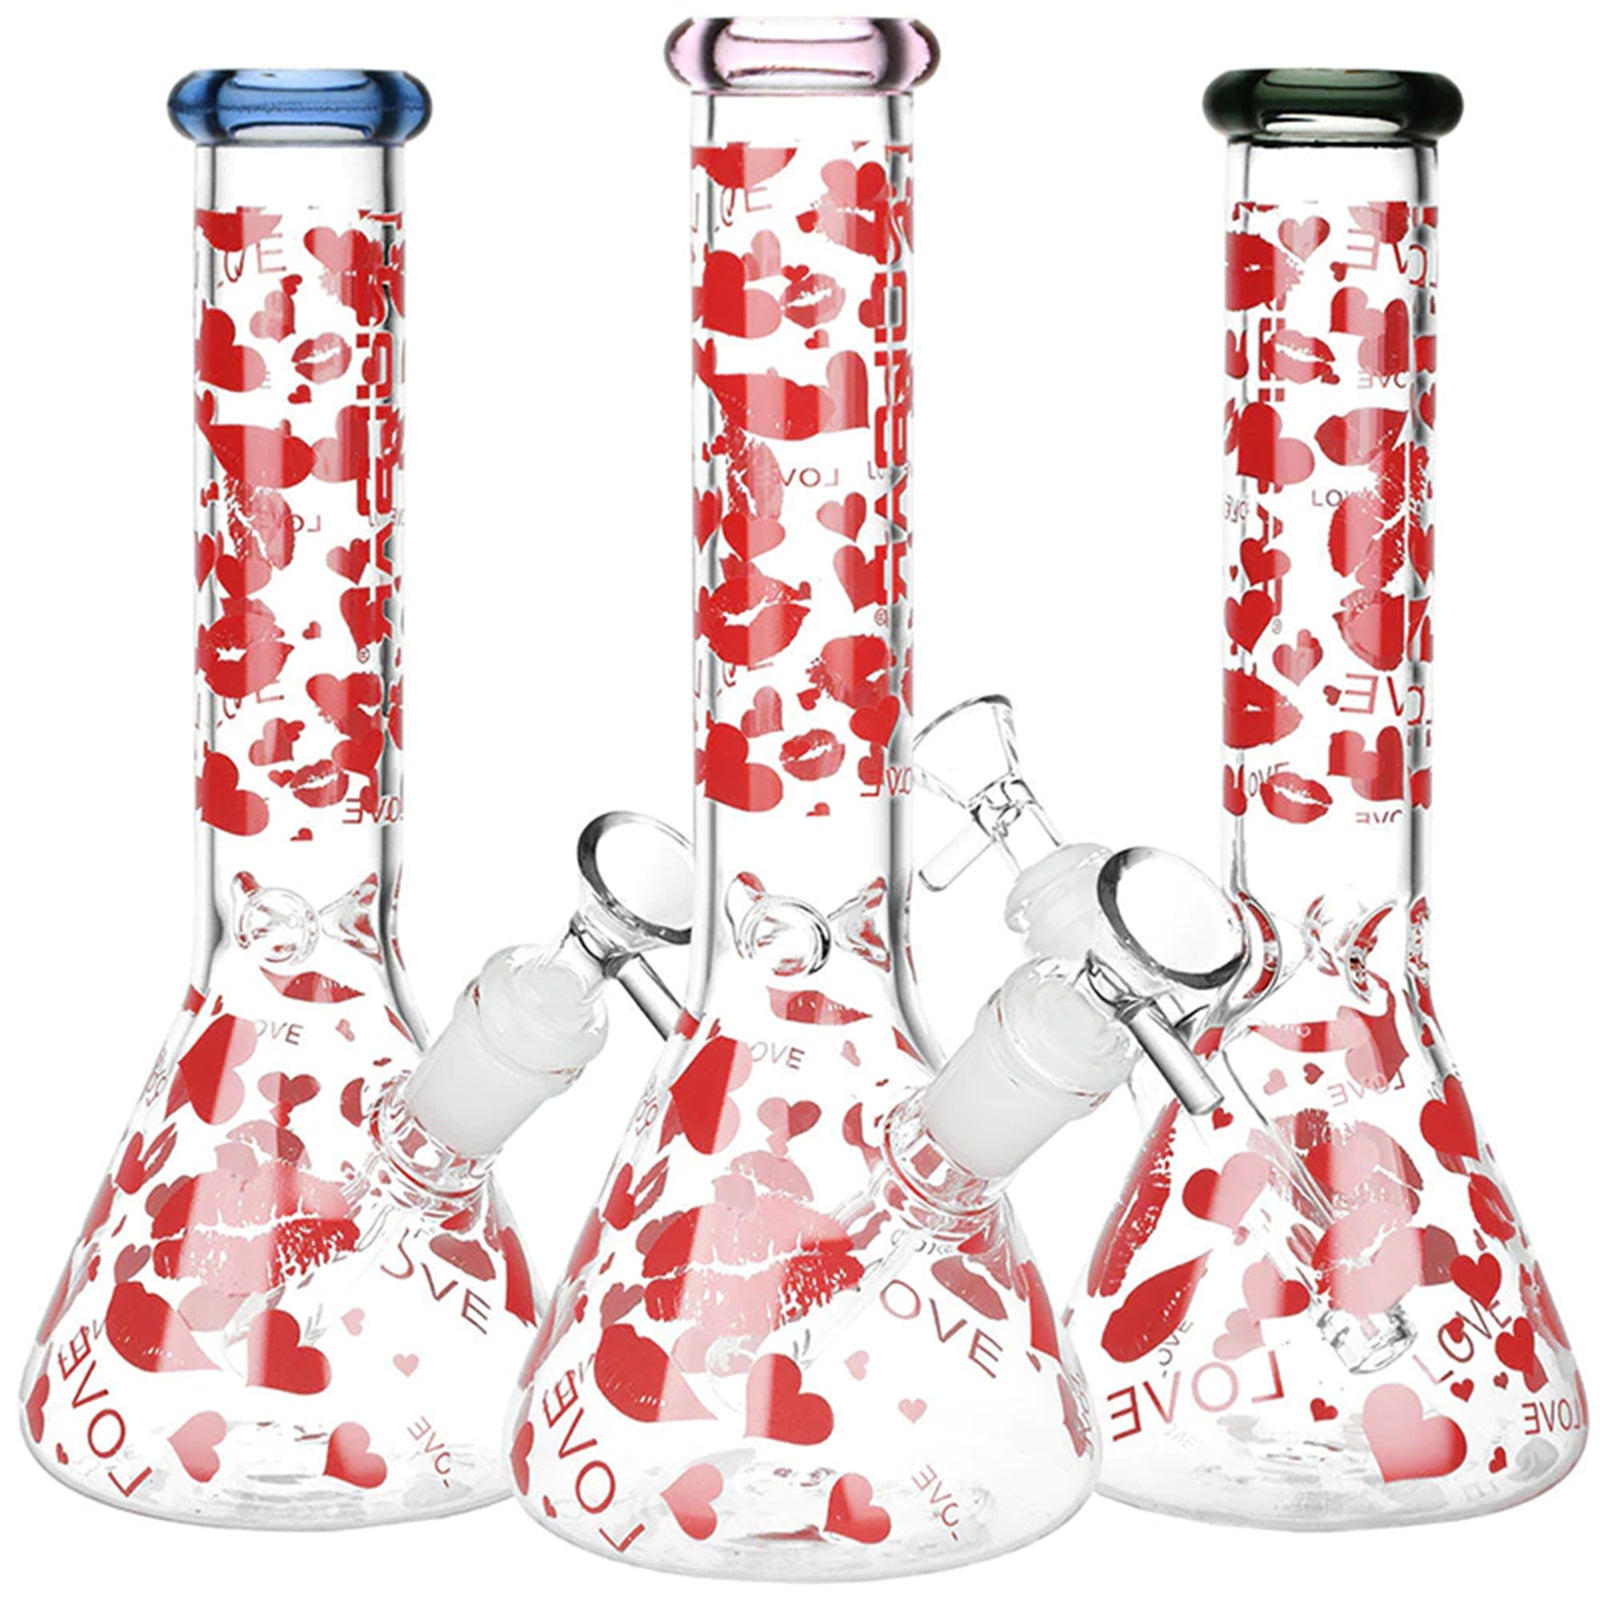 Love Heart & Kiss Pattern Glass Beaker Bongs - INHALCO